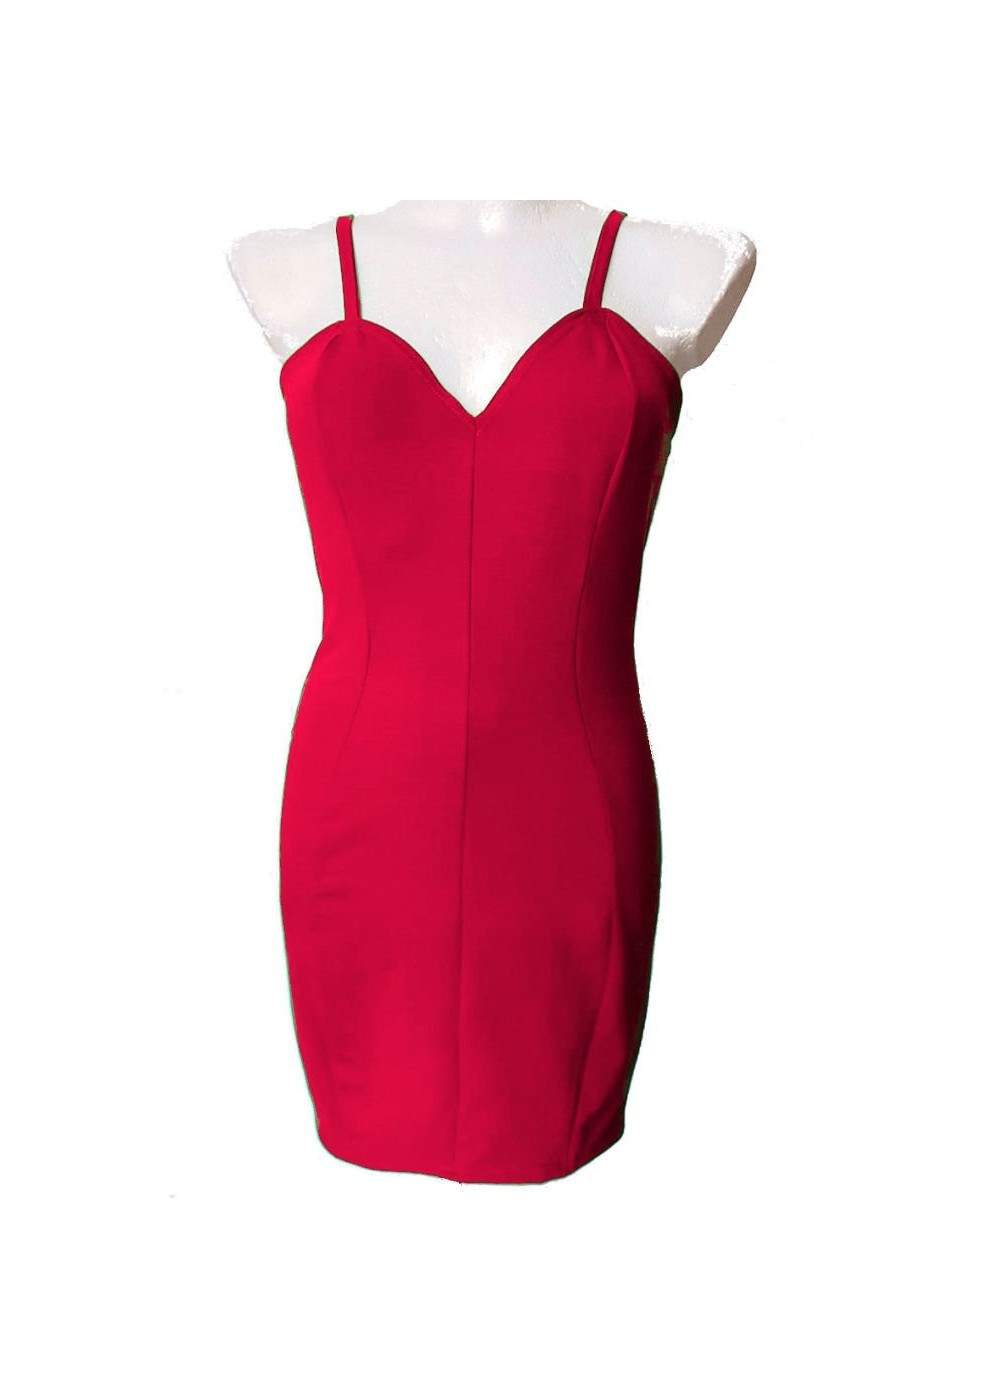 Rotes Stretch Baumwolle Trägerkleid Cockteilkleid Größe 34 - 52 - 